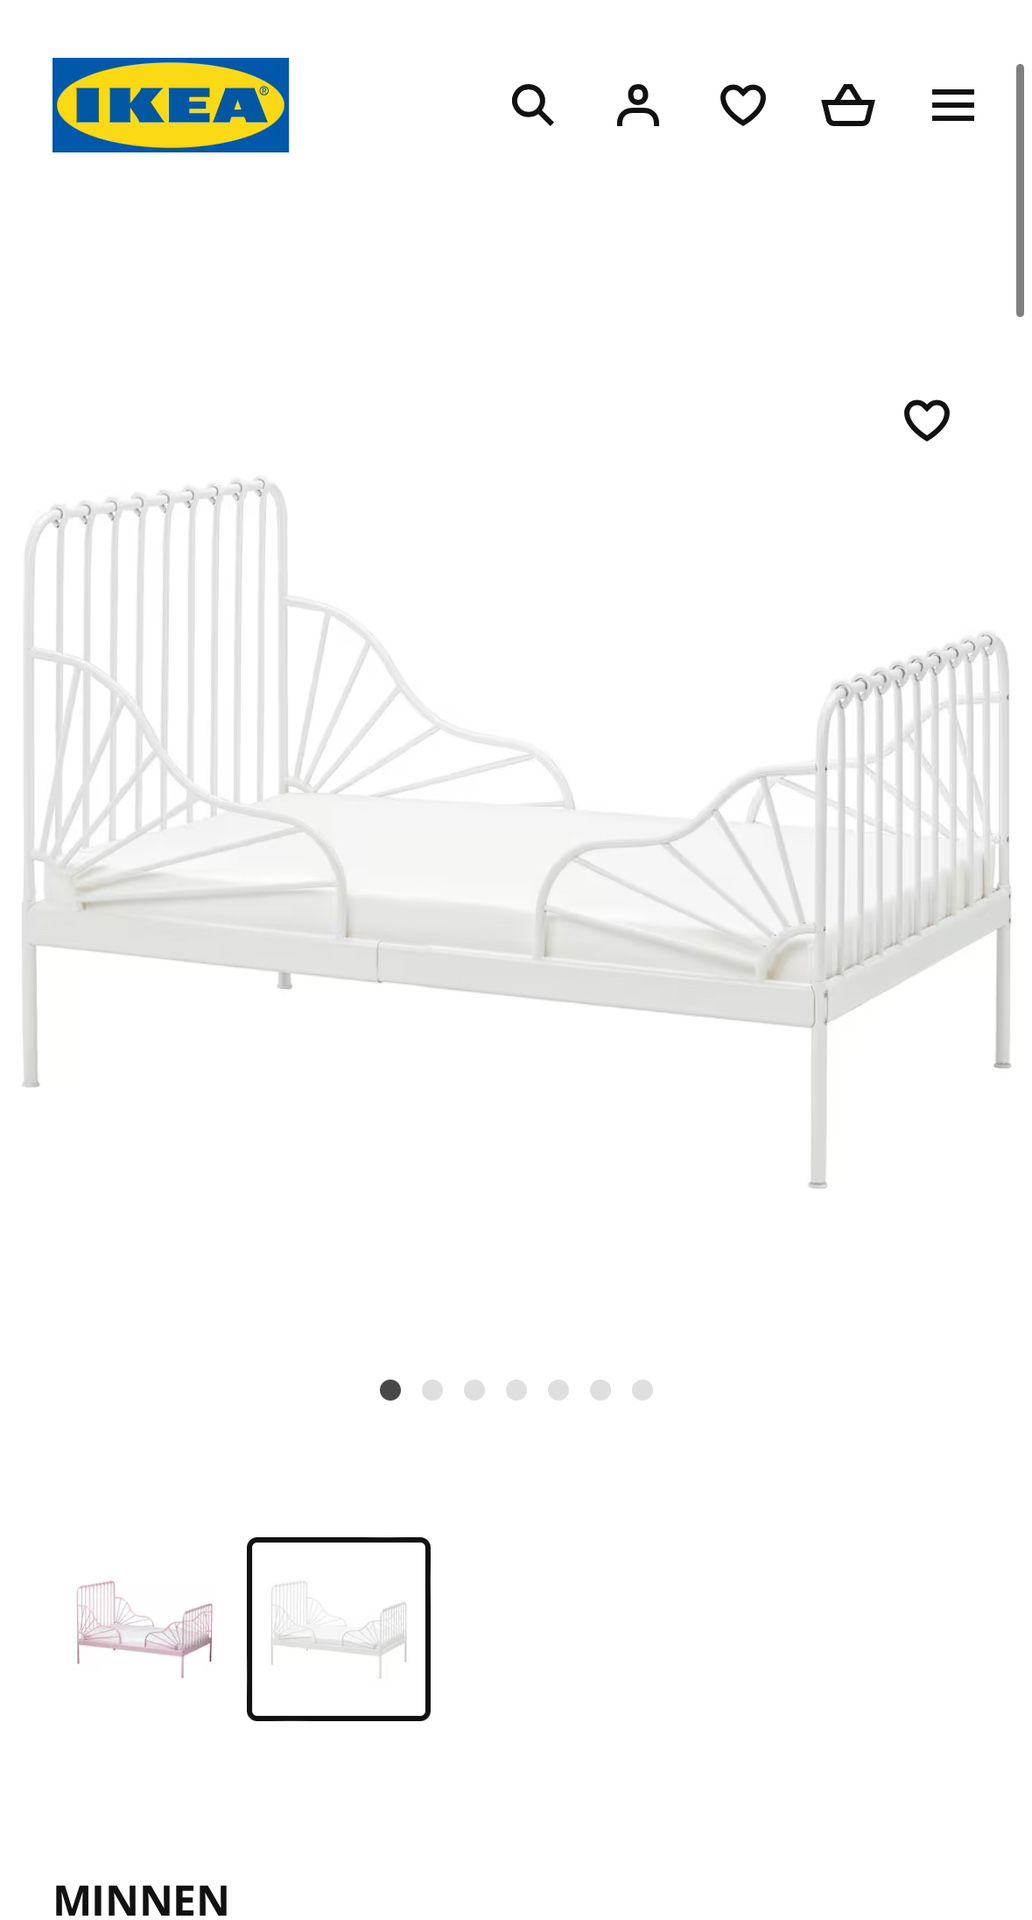 IKEA Kids bed - Minnen 